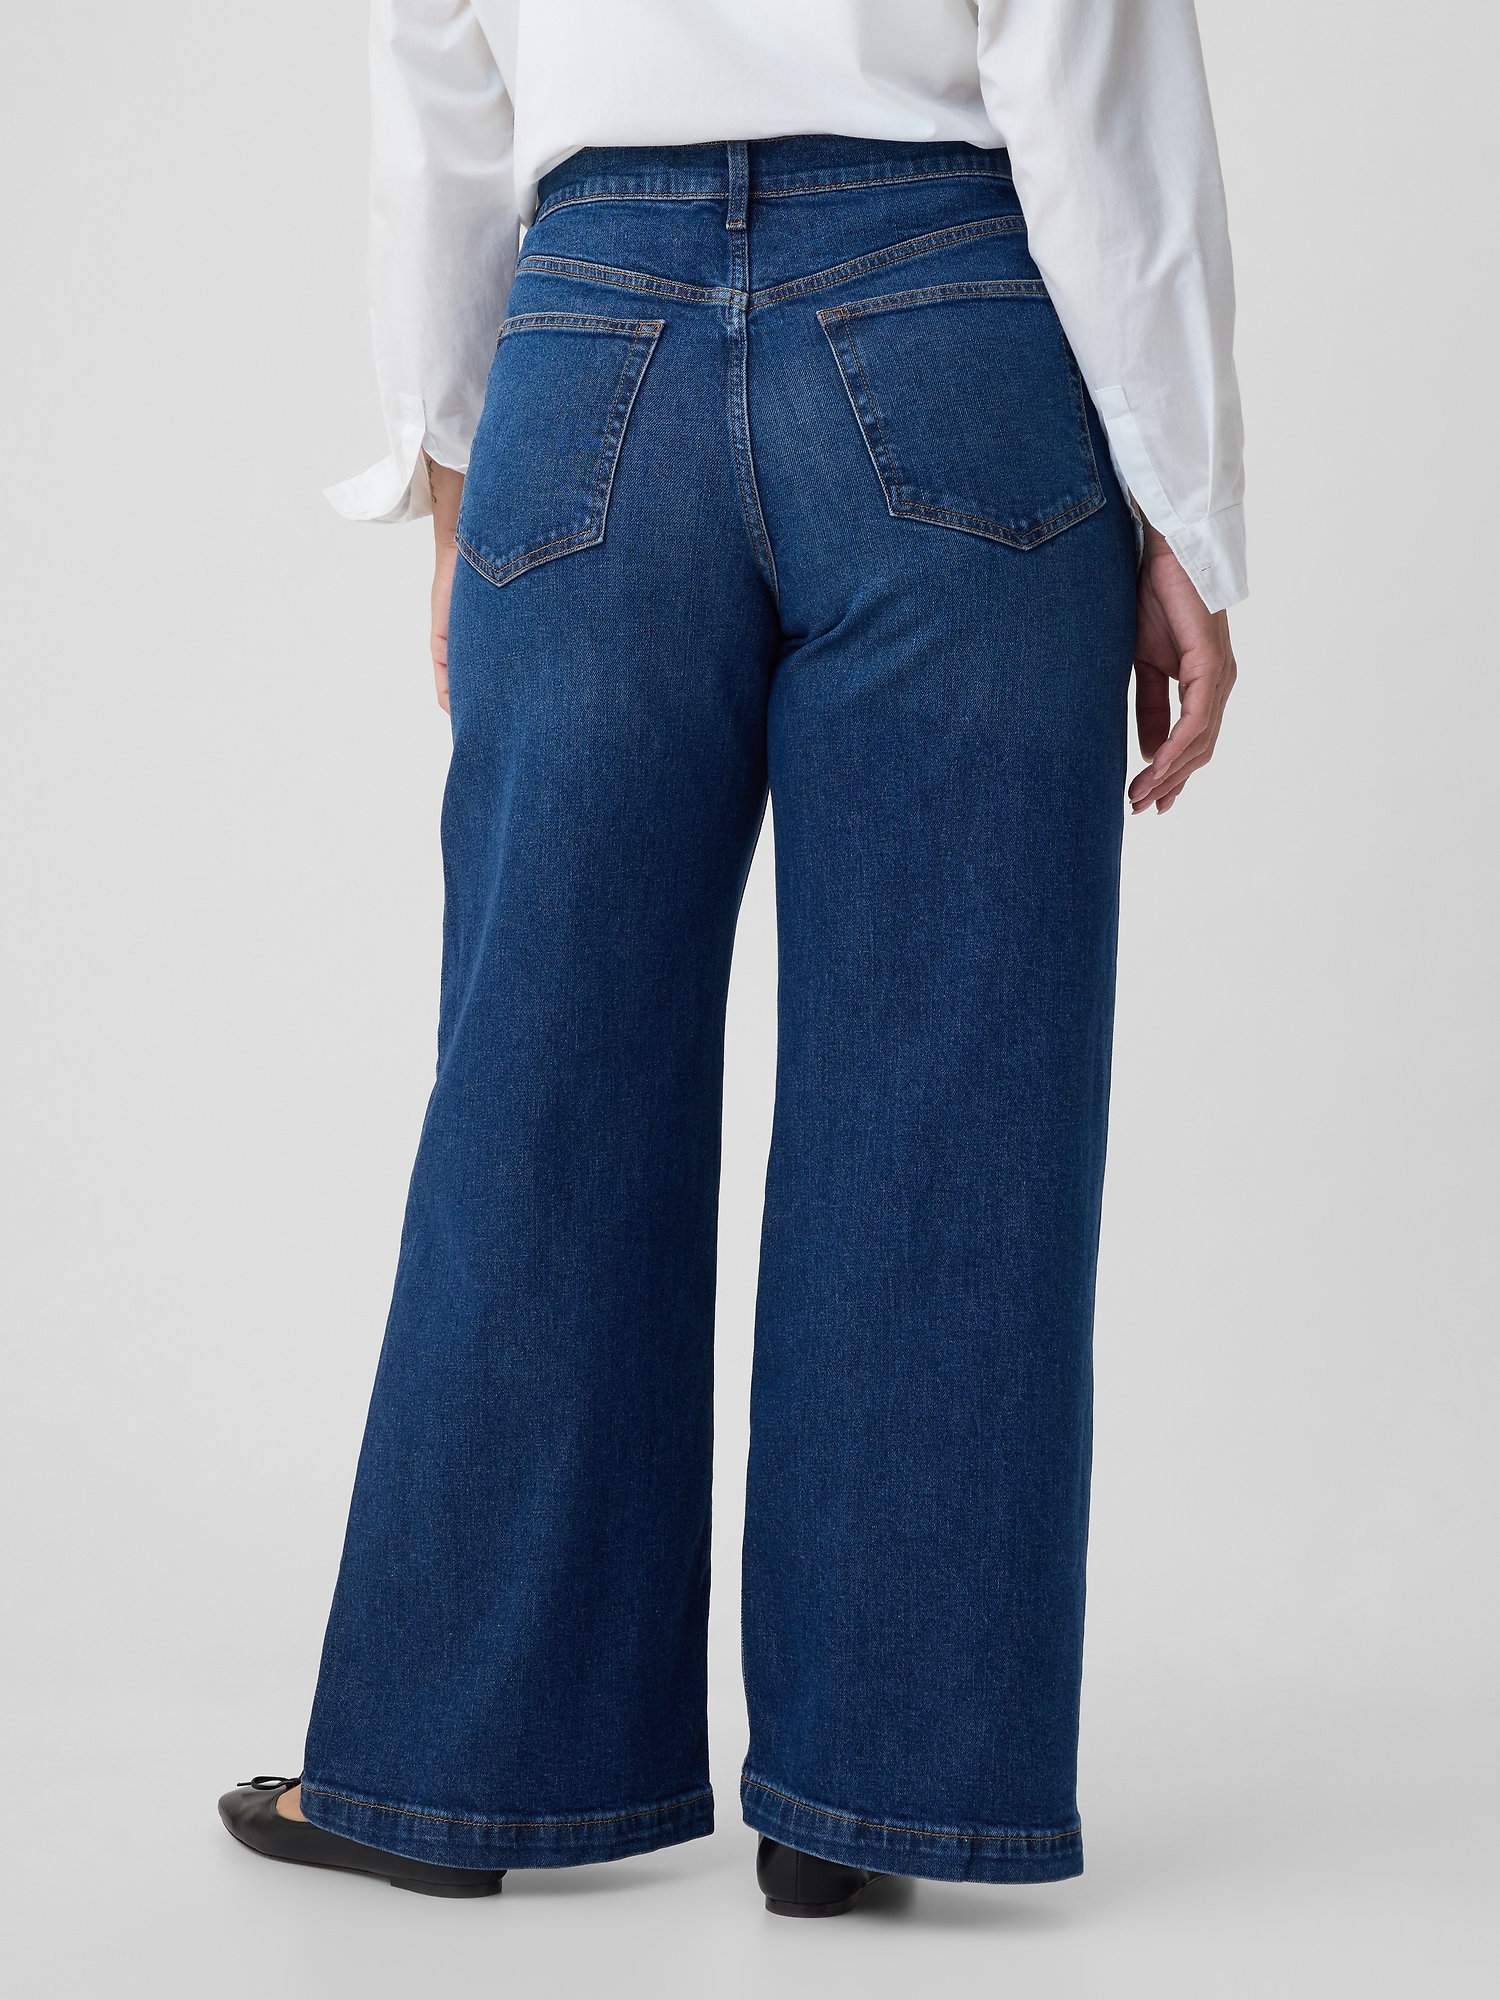 Petite Jeans Inseam 29  - 73.5 cm